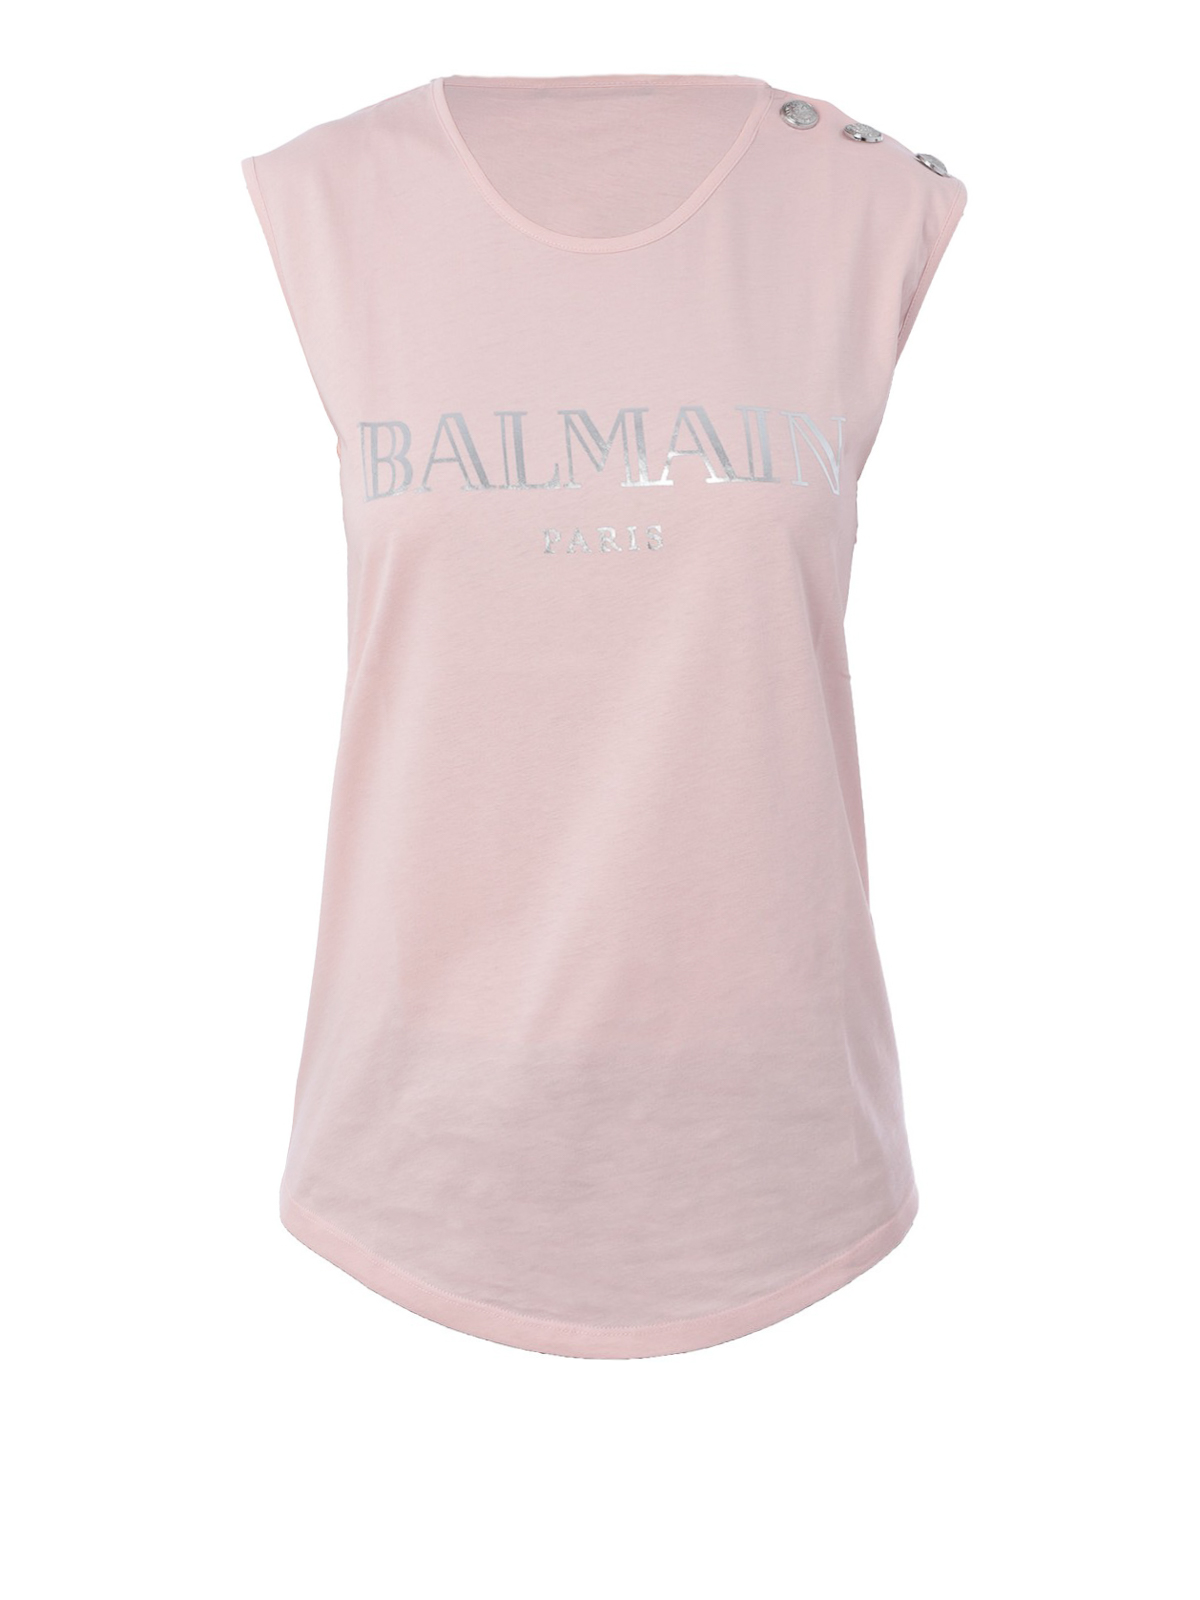 Balmain Logo Print Light Pink Cotton Tank Top